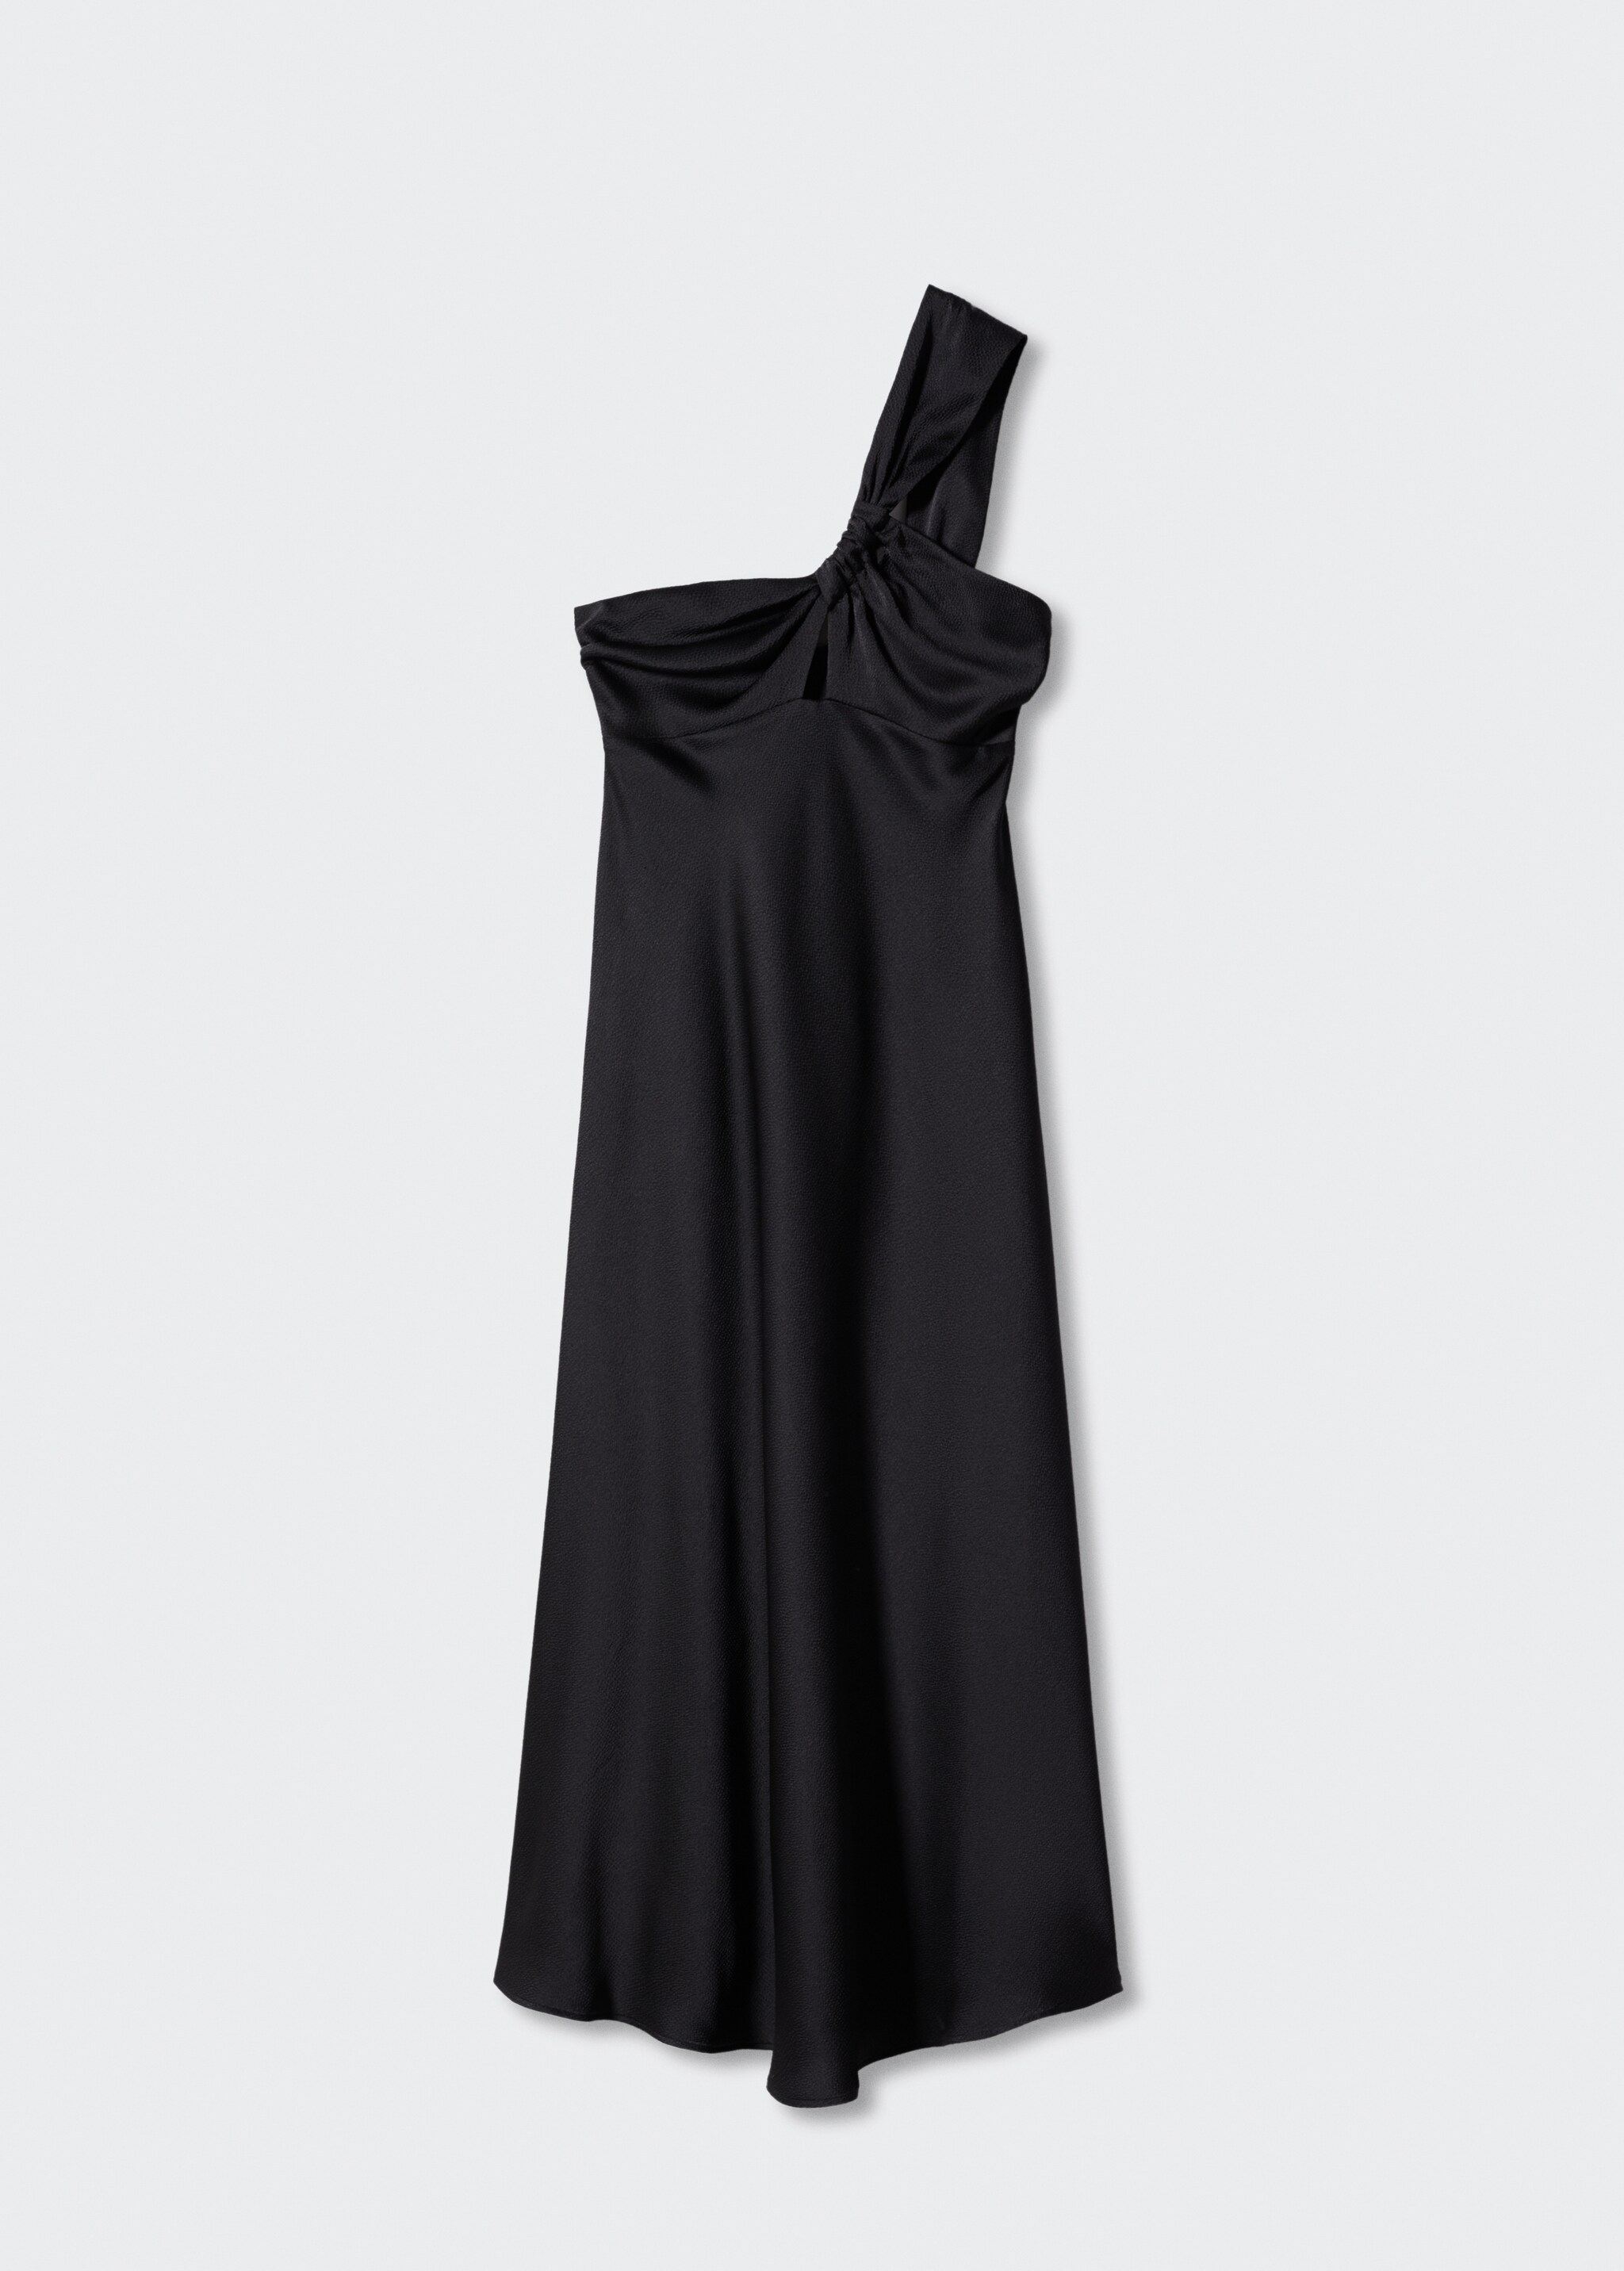 Vestido negro satinado asimétrico - Artículo sin modelo